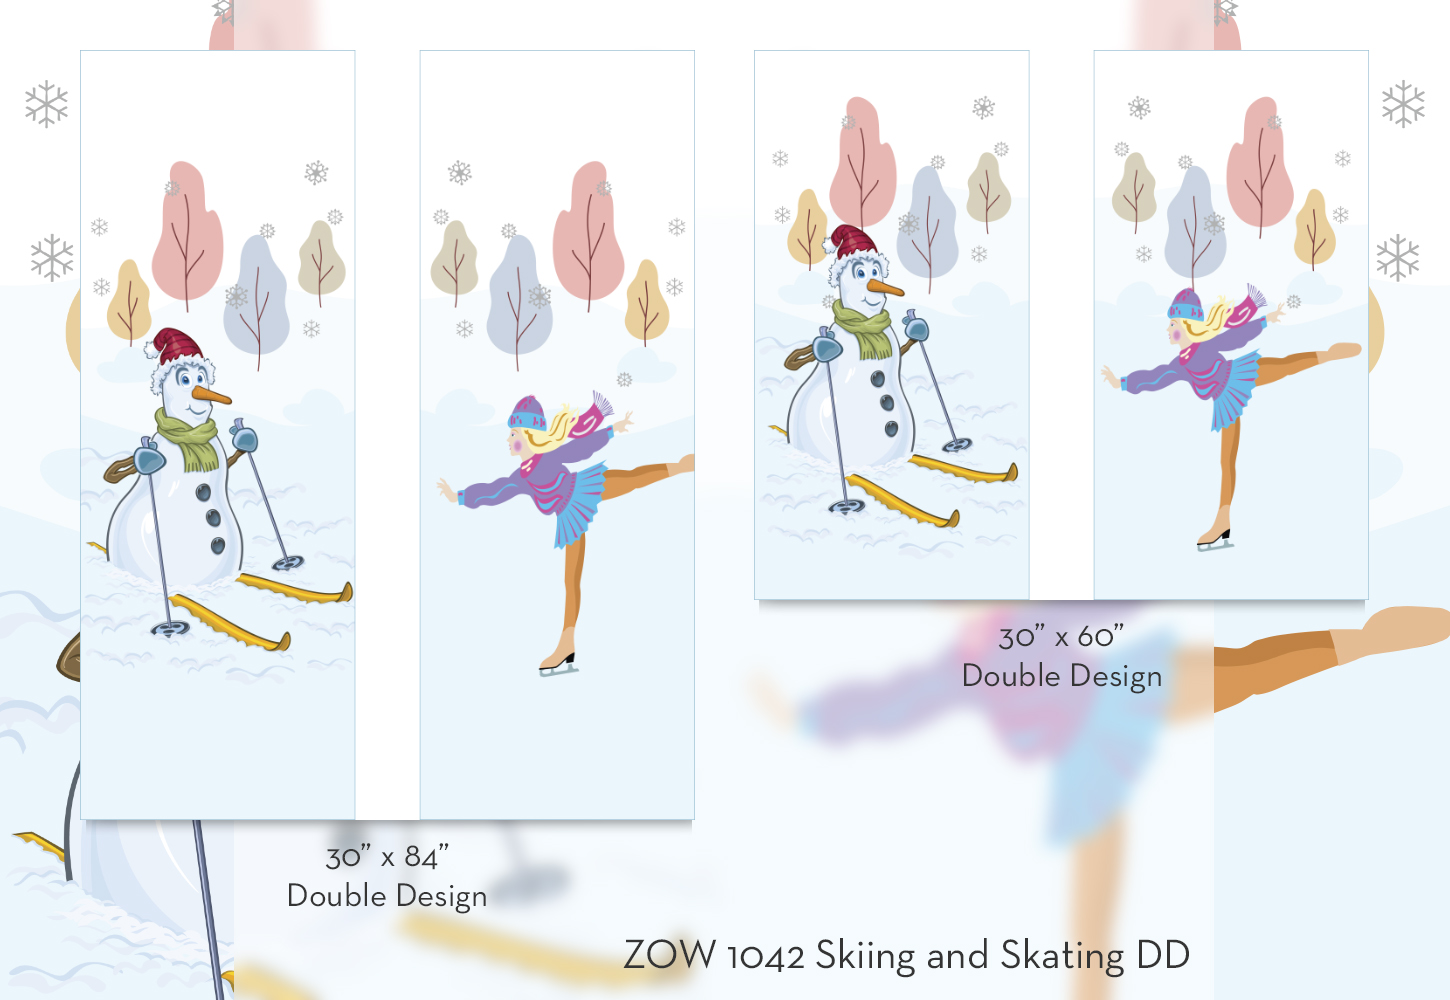 ZOW 1042 Skiing and Skating DD